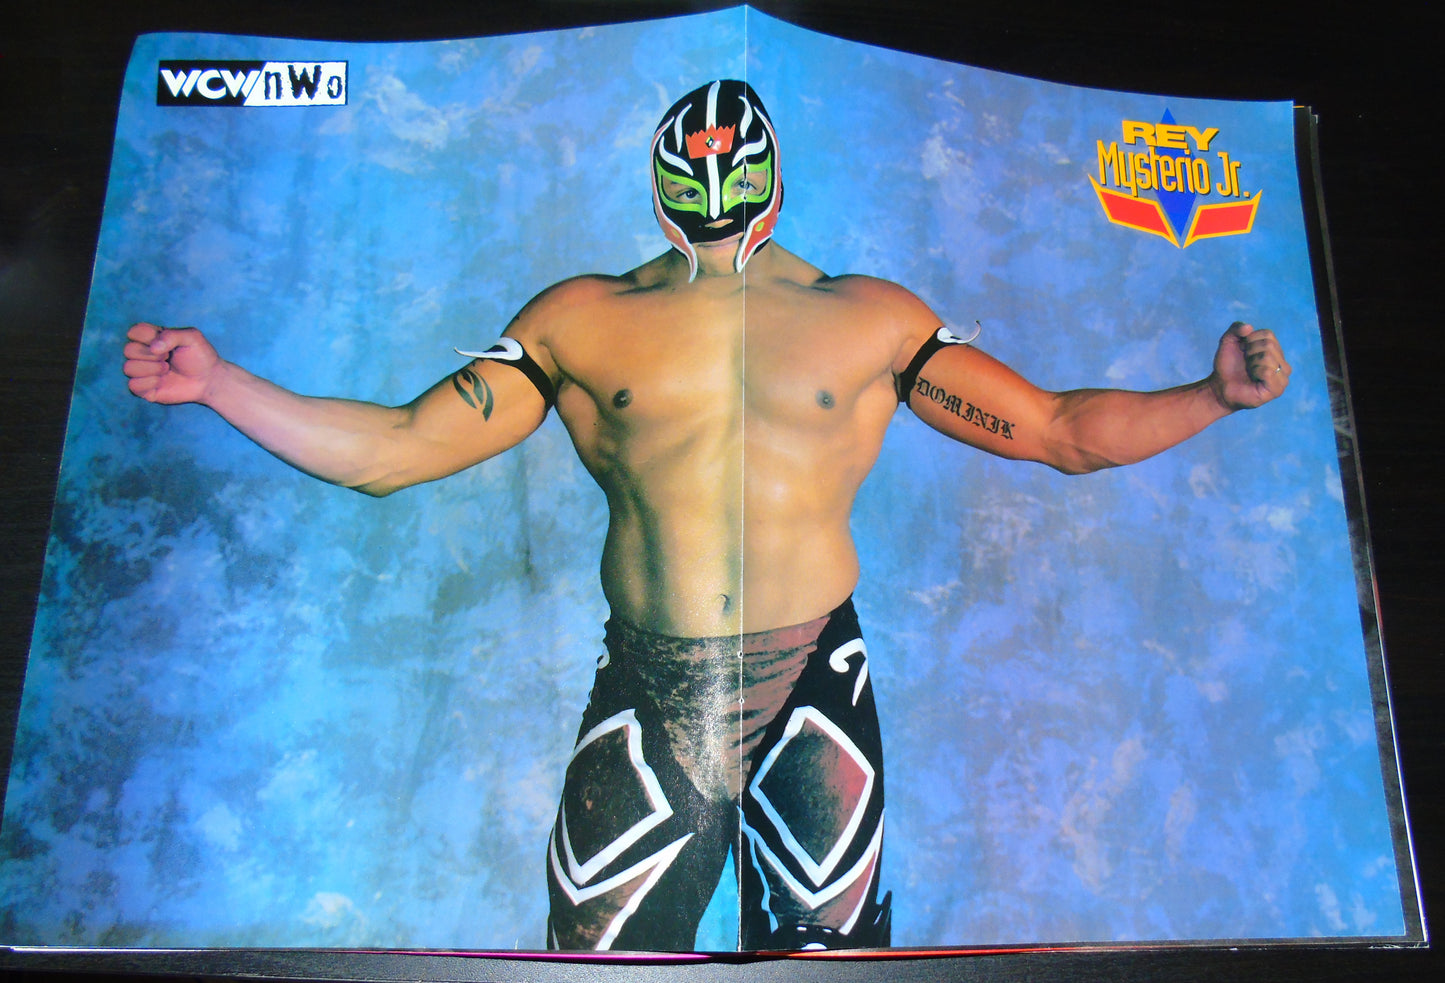 WCW/nWo Magazine October 1998 Issue 43